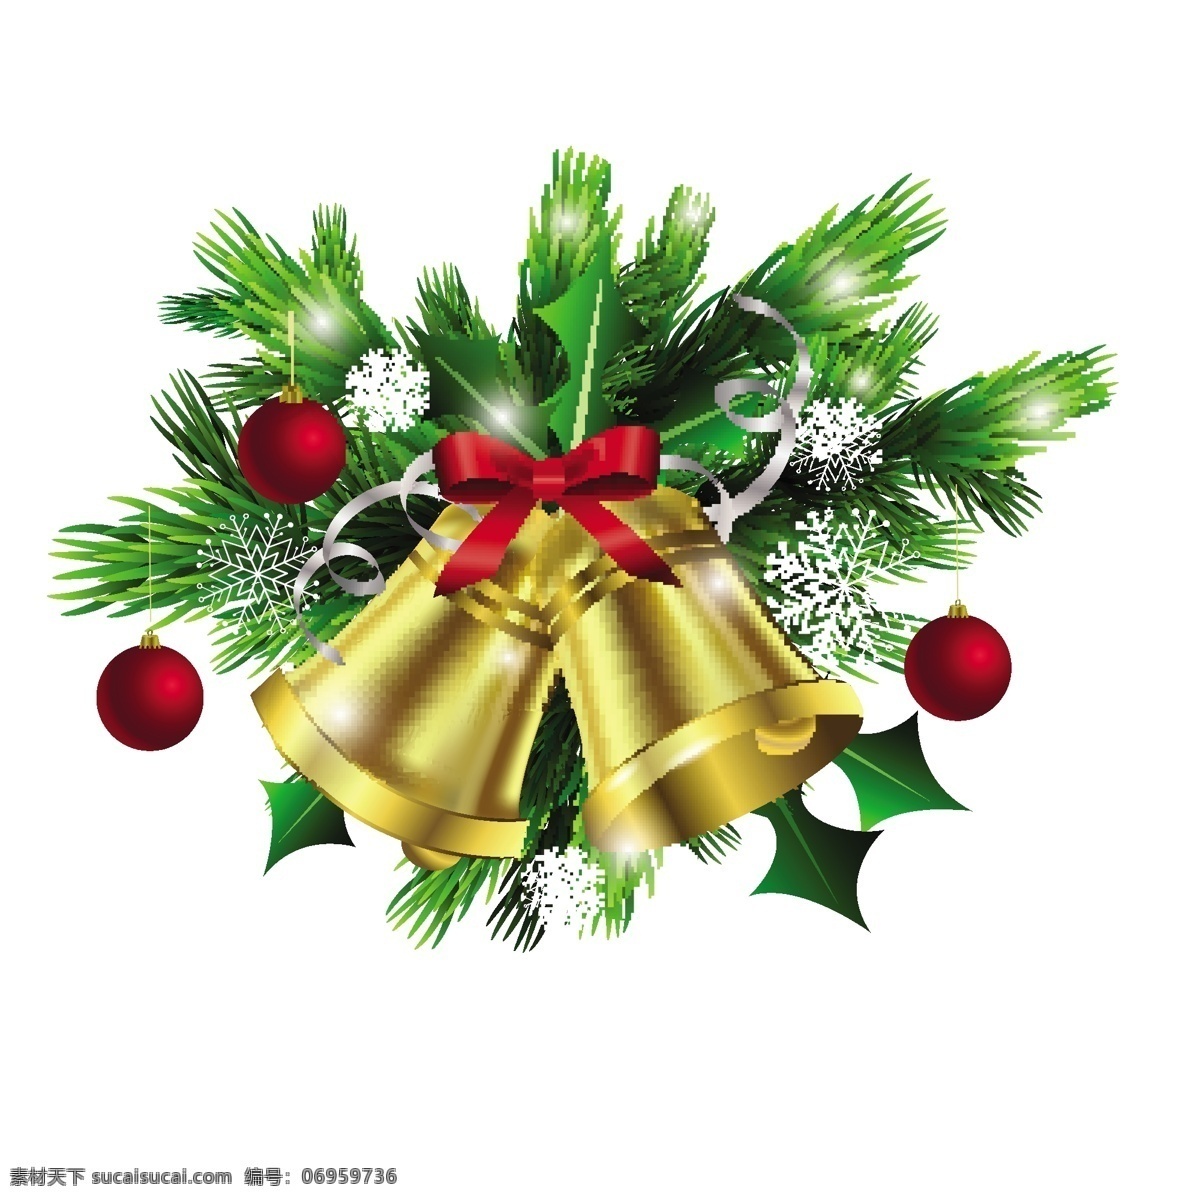 圣诞节铃铛 圣诞树素材 铃铛元素素材 圣诞节 圣诞树 铃铛素材 节日铃铛 精美圣诞铃铛 五颜六色铃铛 许多圣诞铃铛 金色圣诞铃铛